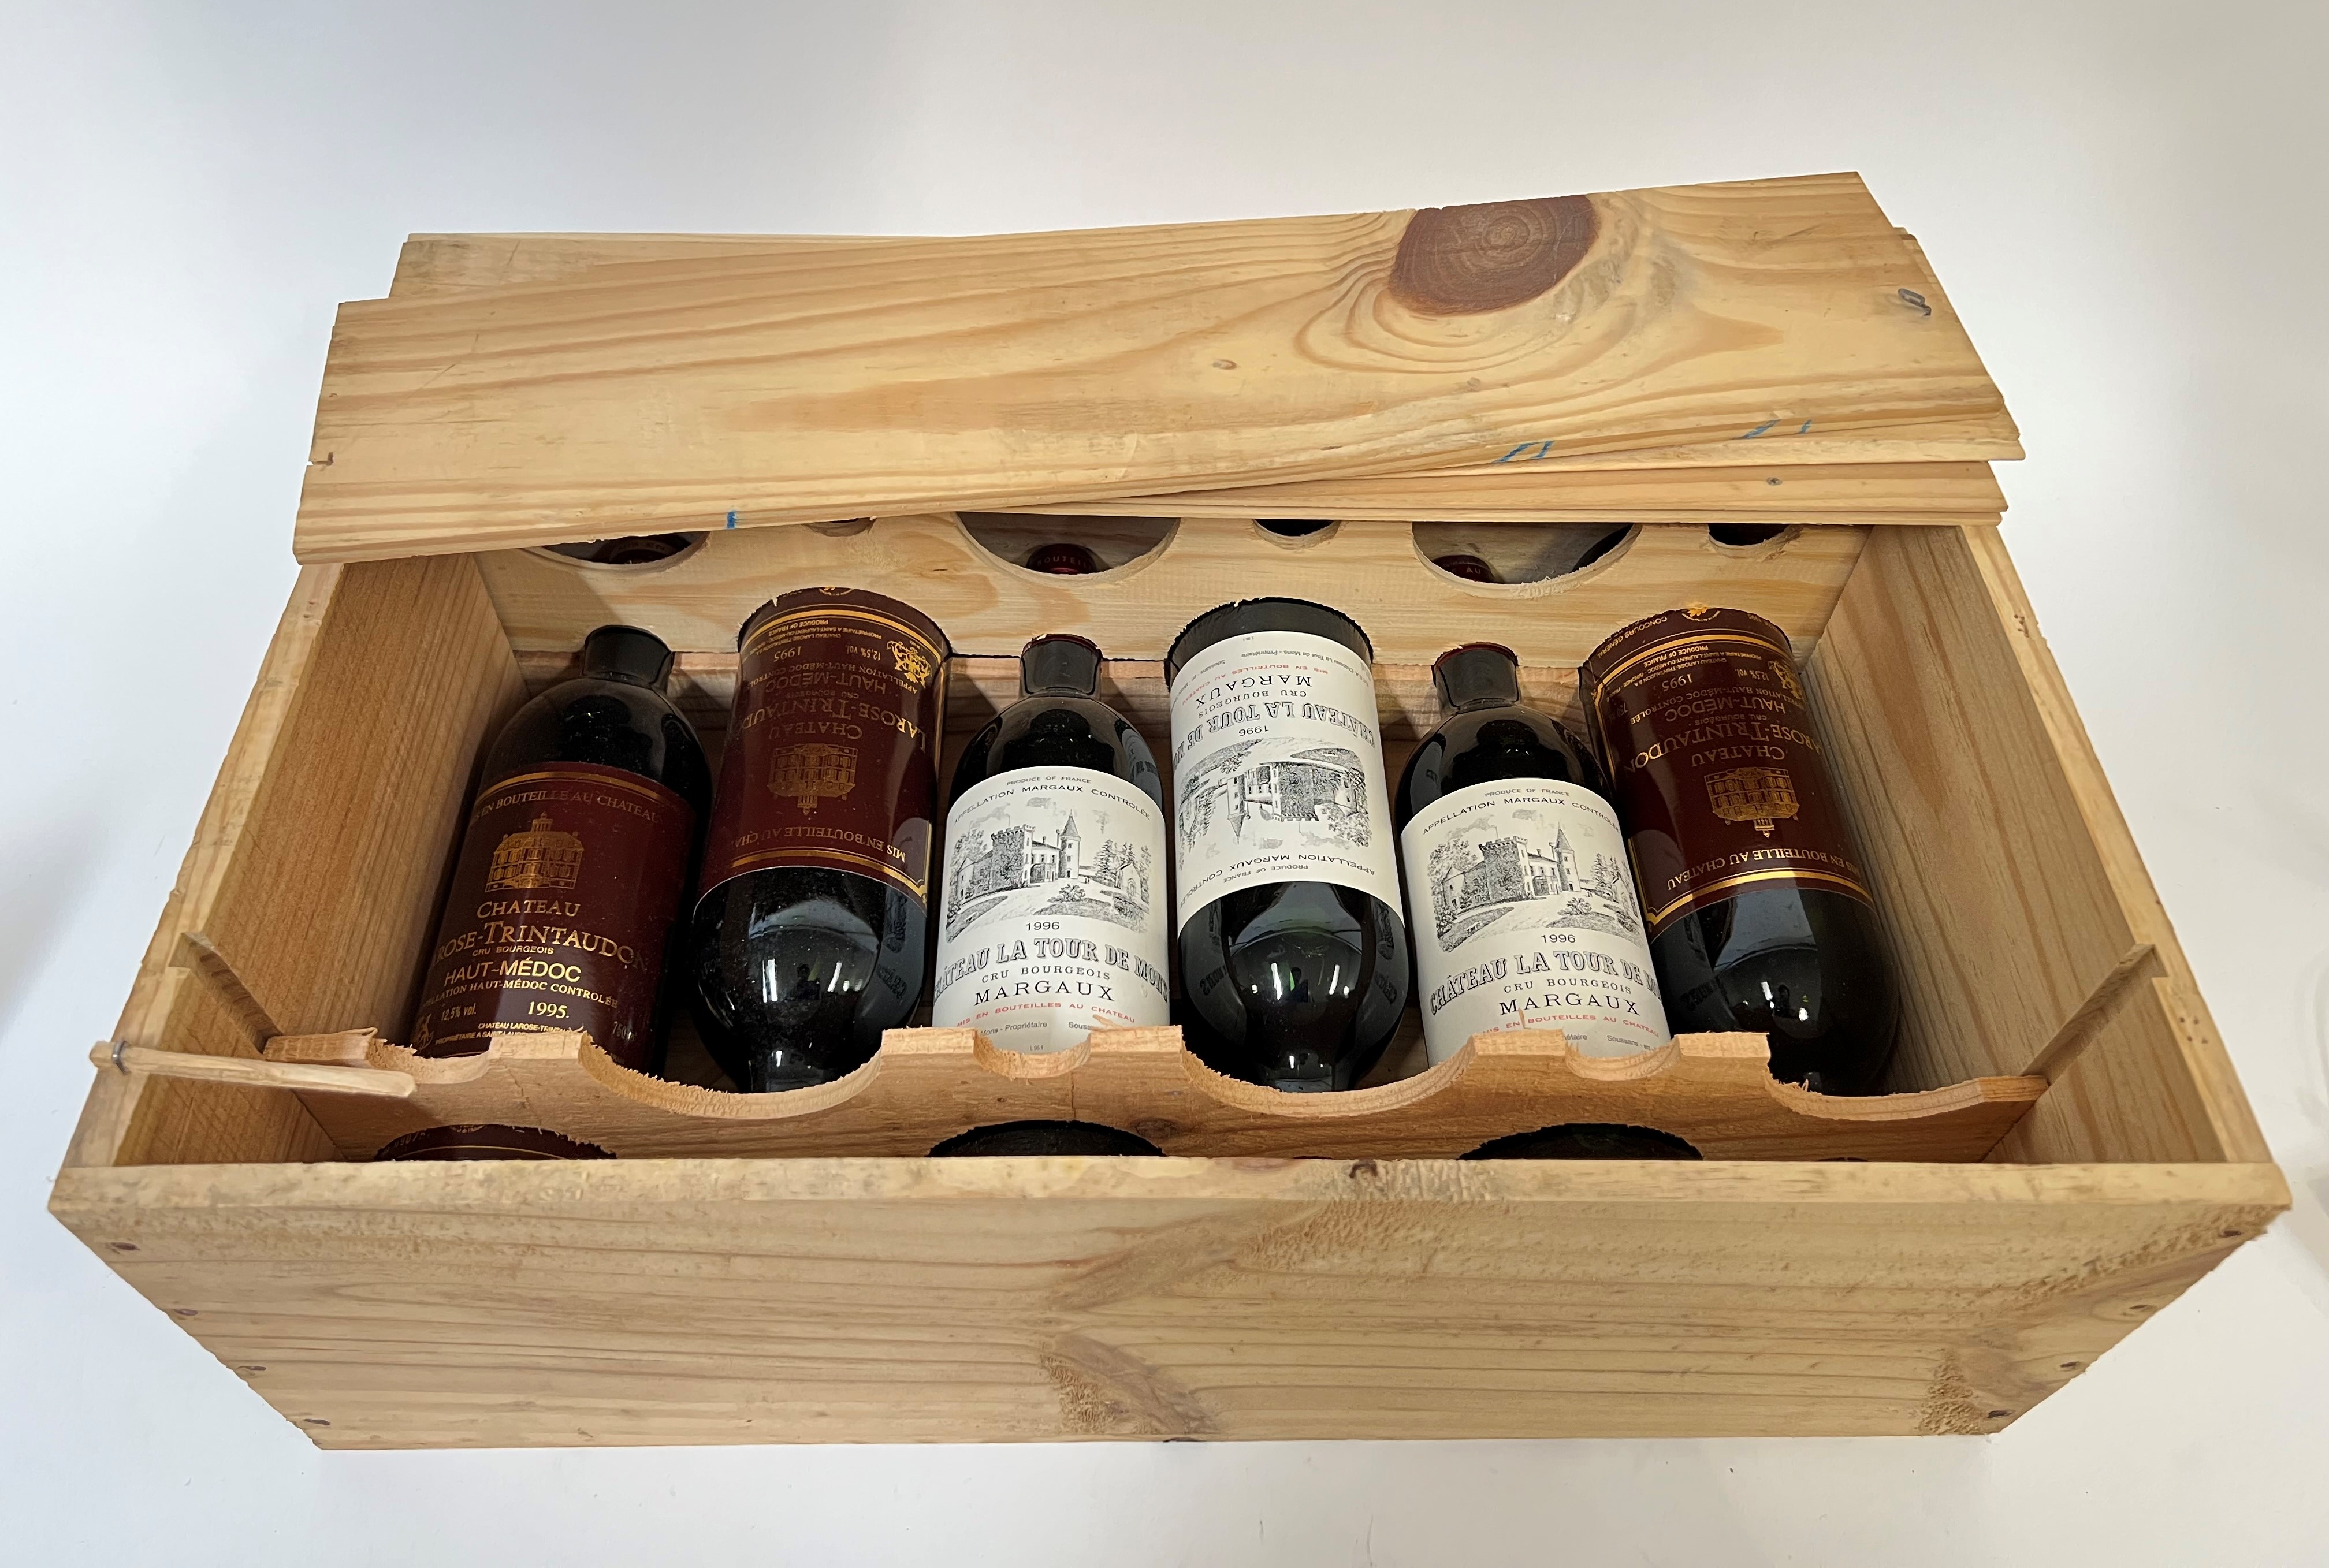 A Chateau La Tour de Mons Margeaux wooden wine case containing three bottles of 1996 Margeaux wine